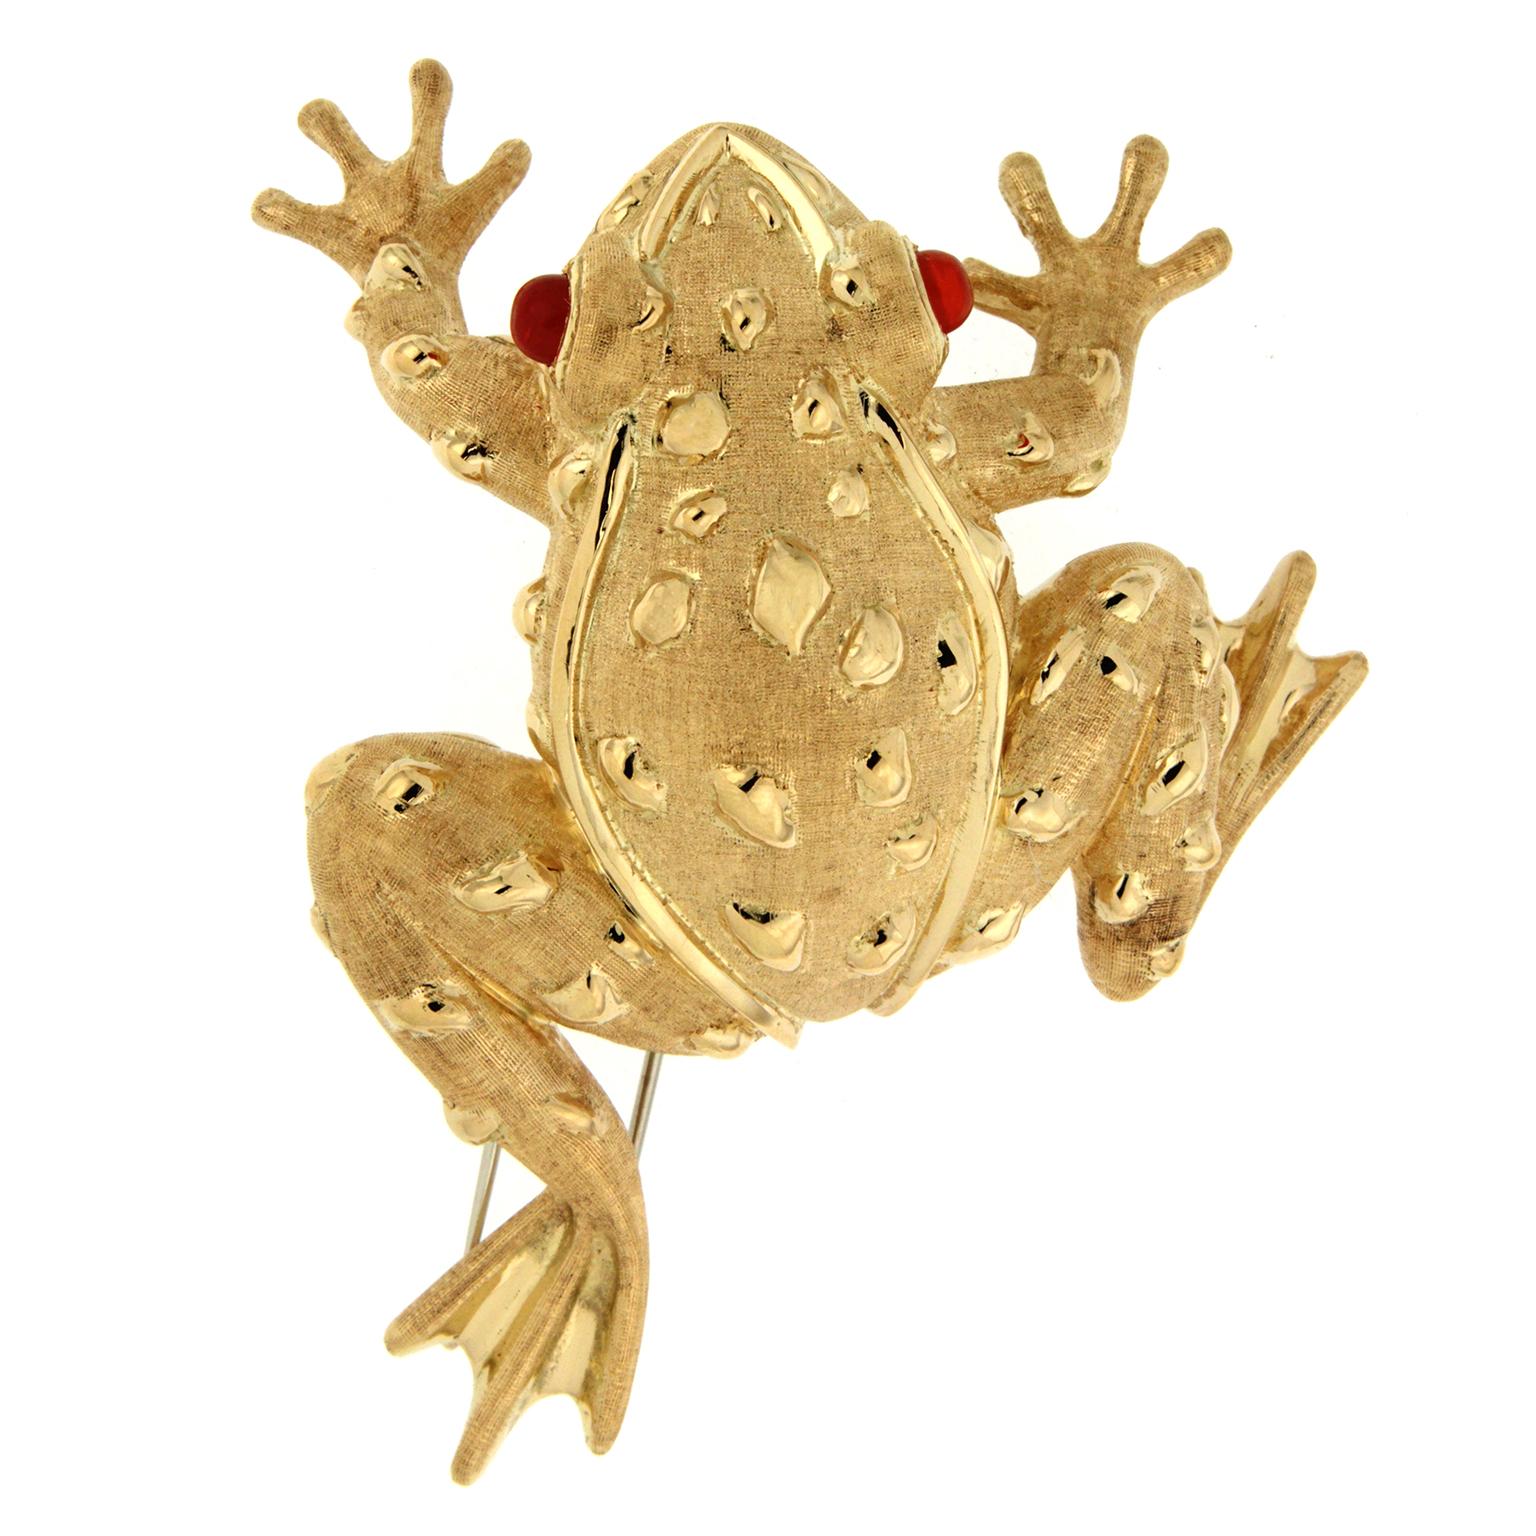 Gold und ein kostbares Juwel bilden bei dieser Brosche einen Frosch. 18 Karat Gelbgold bildet den strukturierten Körper, mit Handwerkskunst zu den Armen und Füßen. Schlanke Strähnen aus glattem Gold umranden die Augen, den Kopf und die Seiten, um